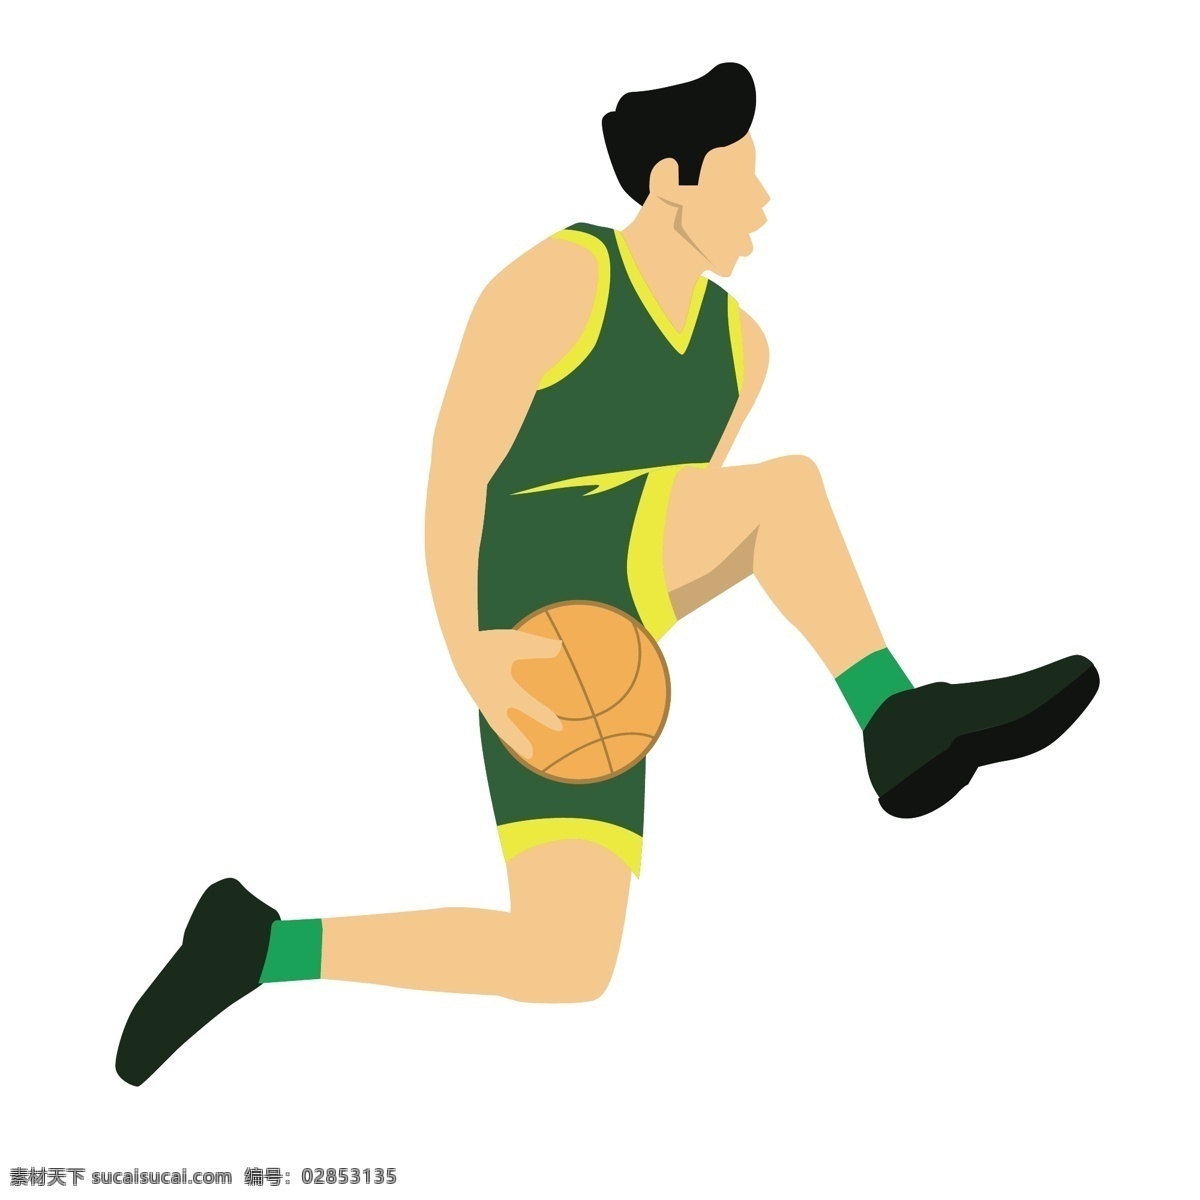 卡通 躲 球 姿势 矢量 篮球 篮球运动员 运动员 体育 体育运动员 打球 打篮球 打球姿势 投篮姿势 运动姿势